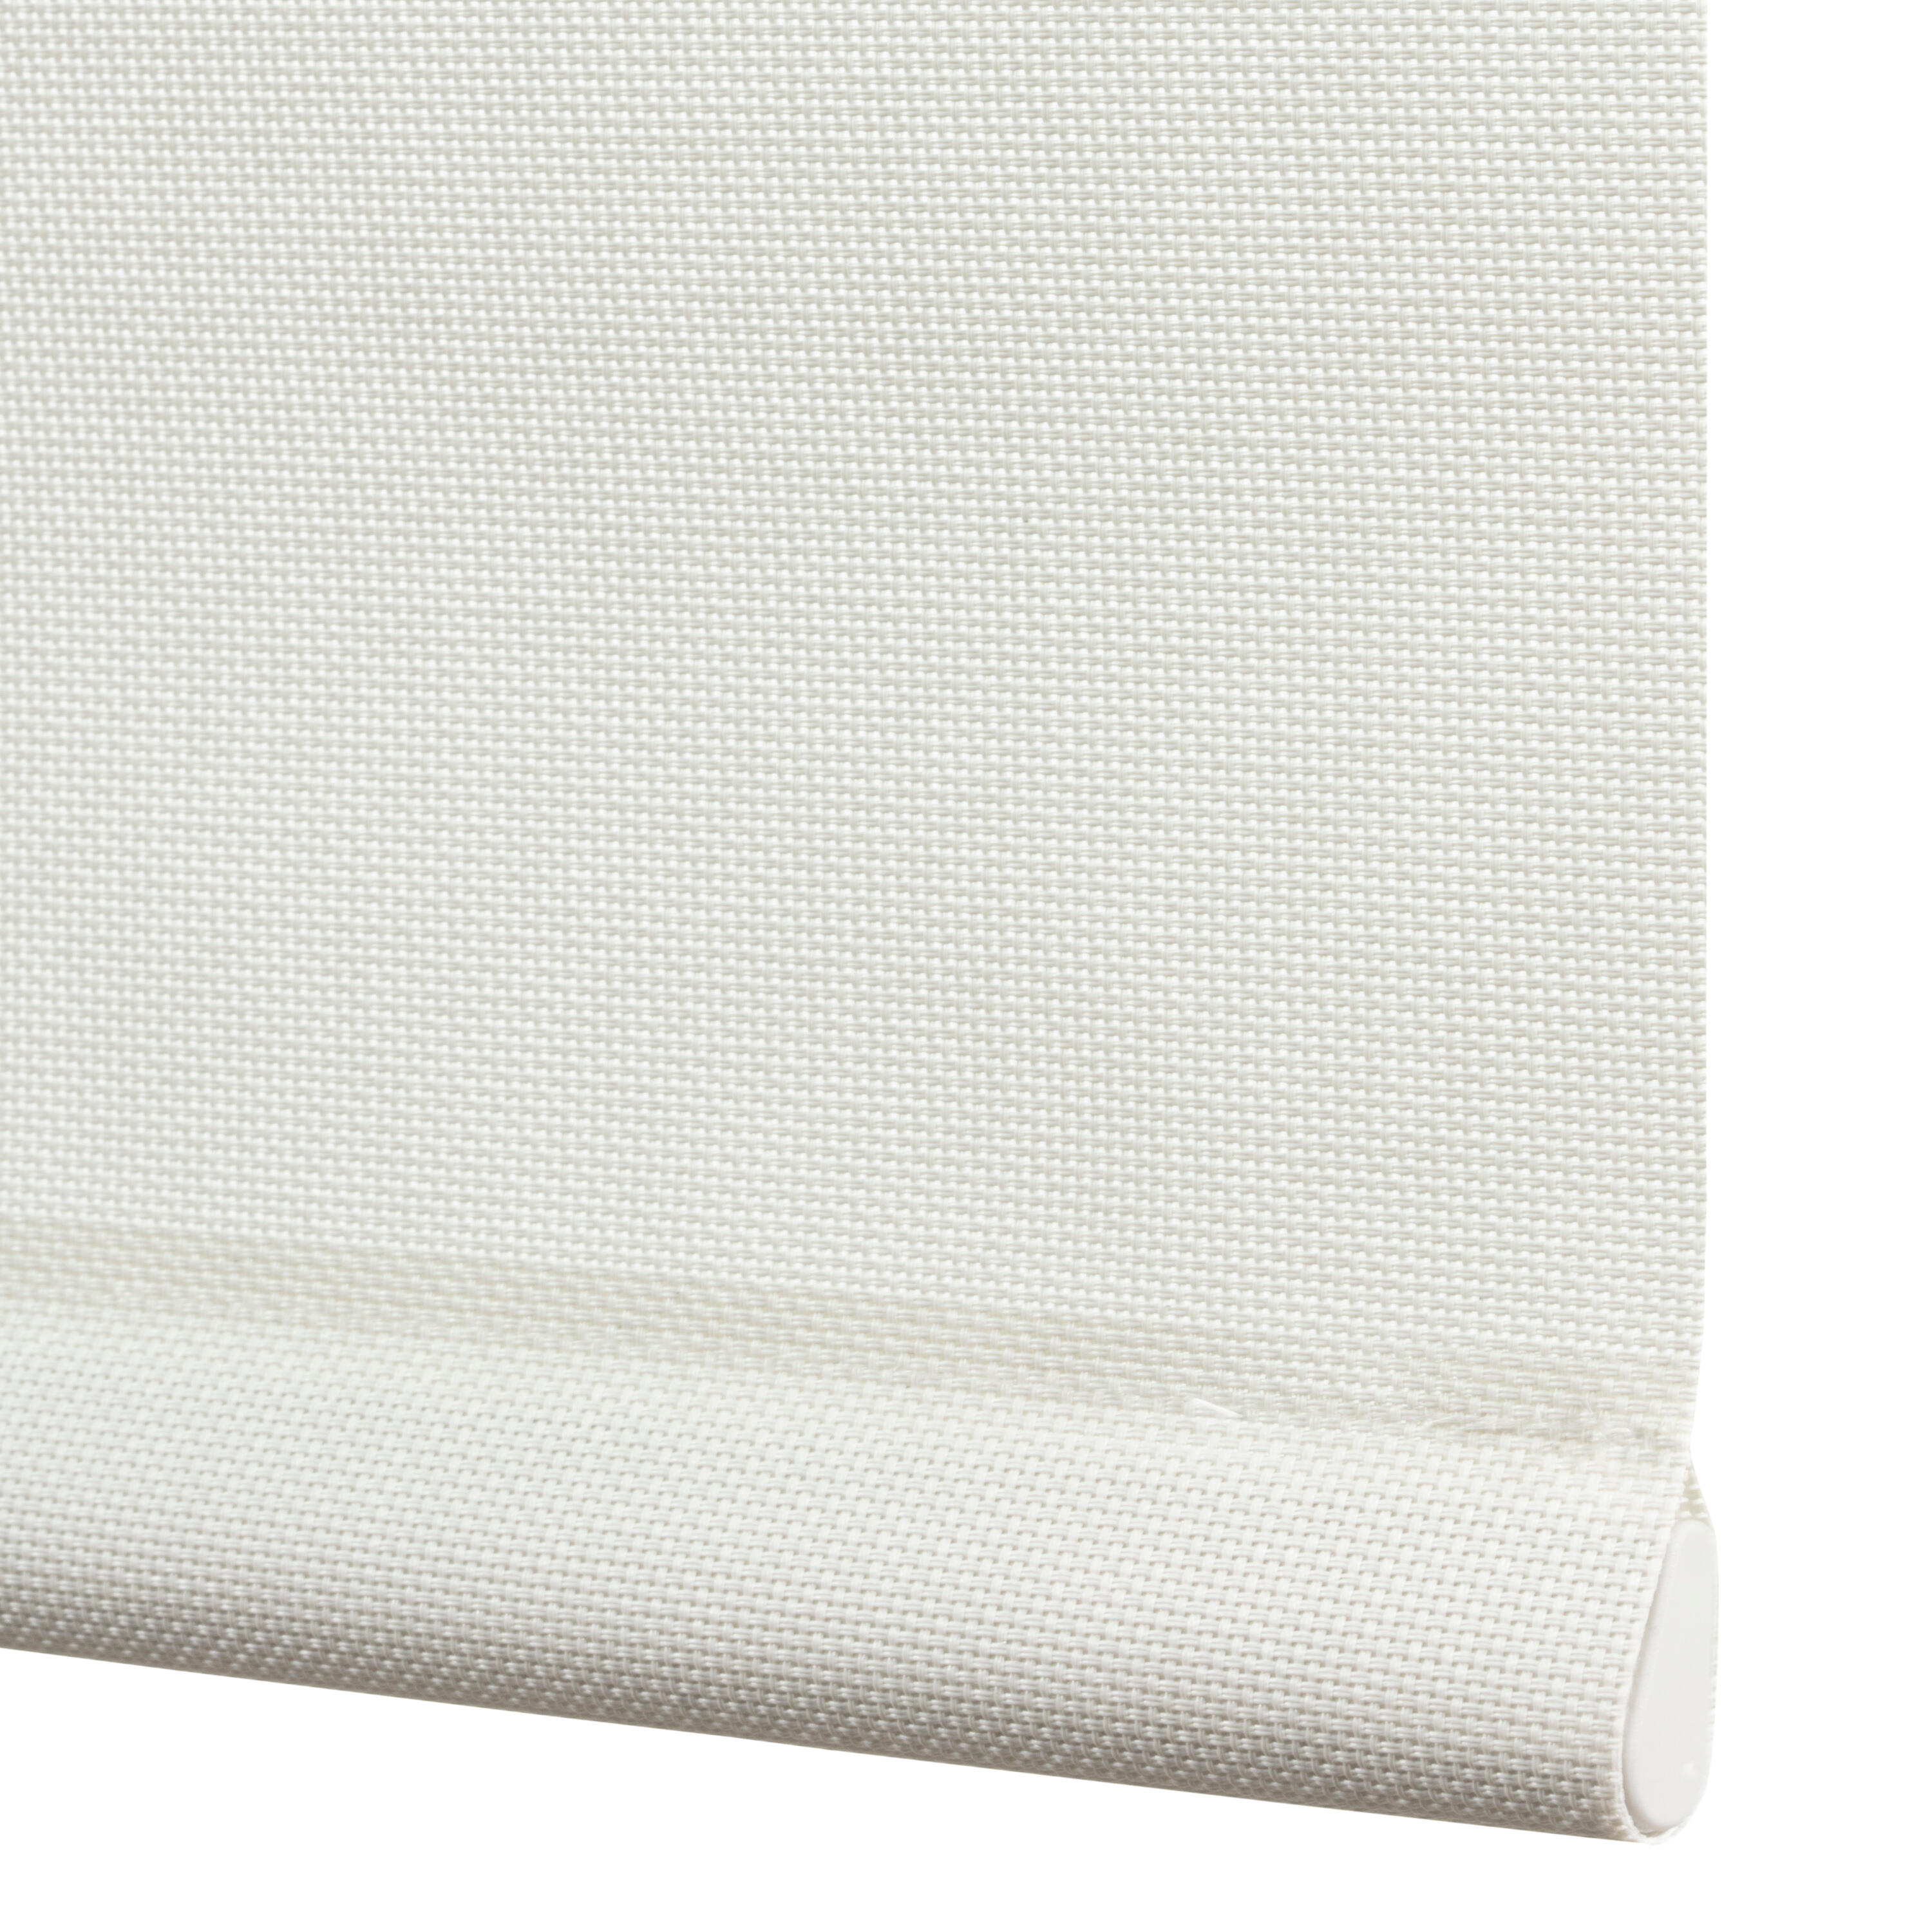 Tenda a rullo filtrante INSPIRE Brasilia bianco 220 x 250 cm - 5